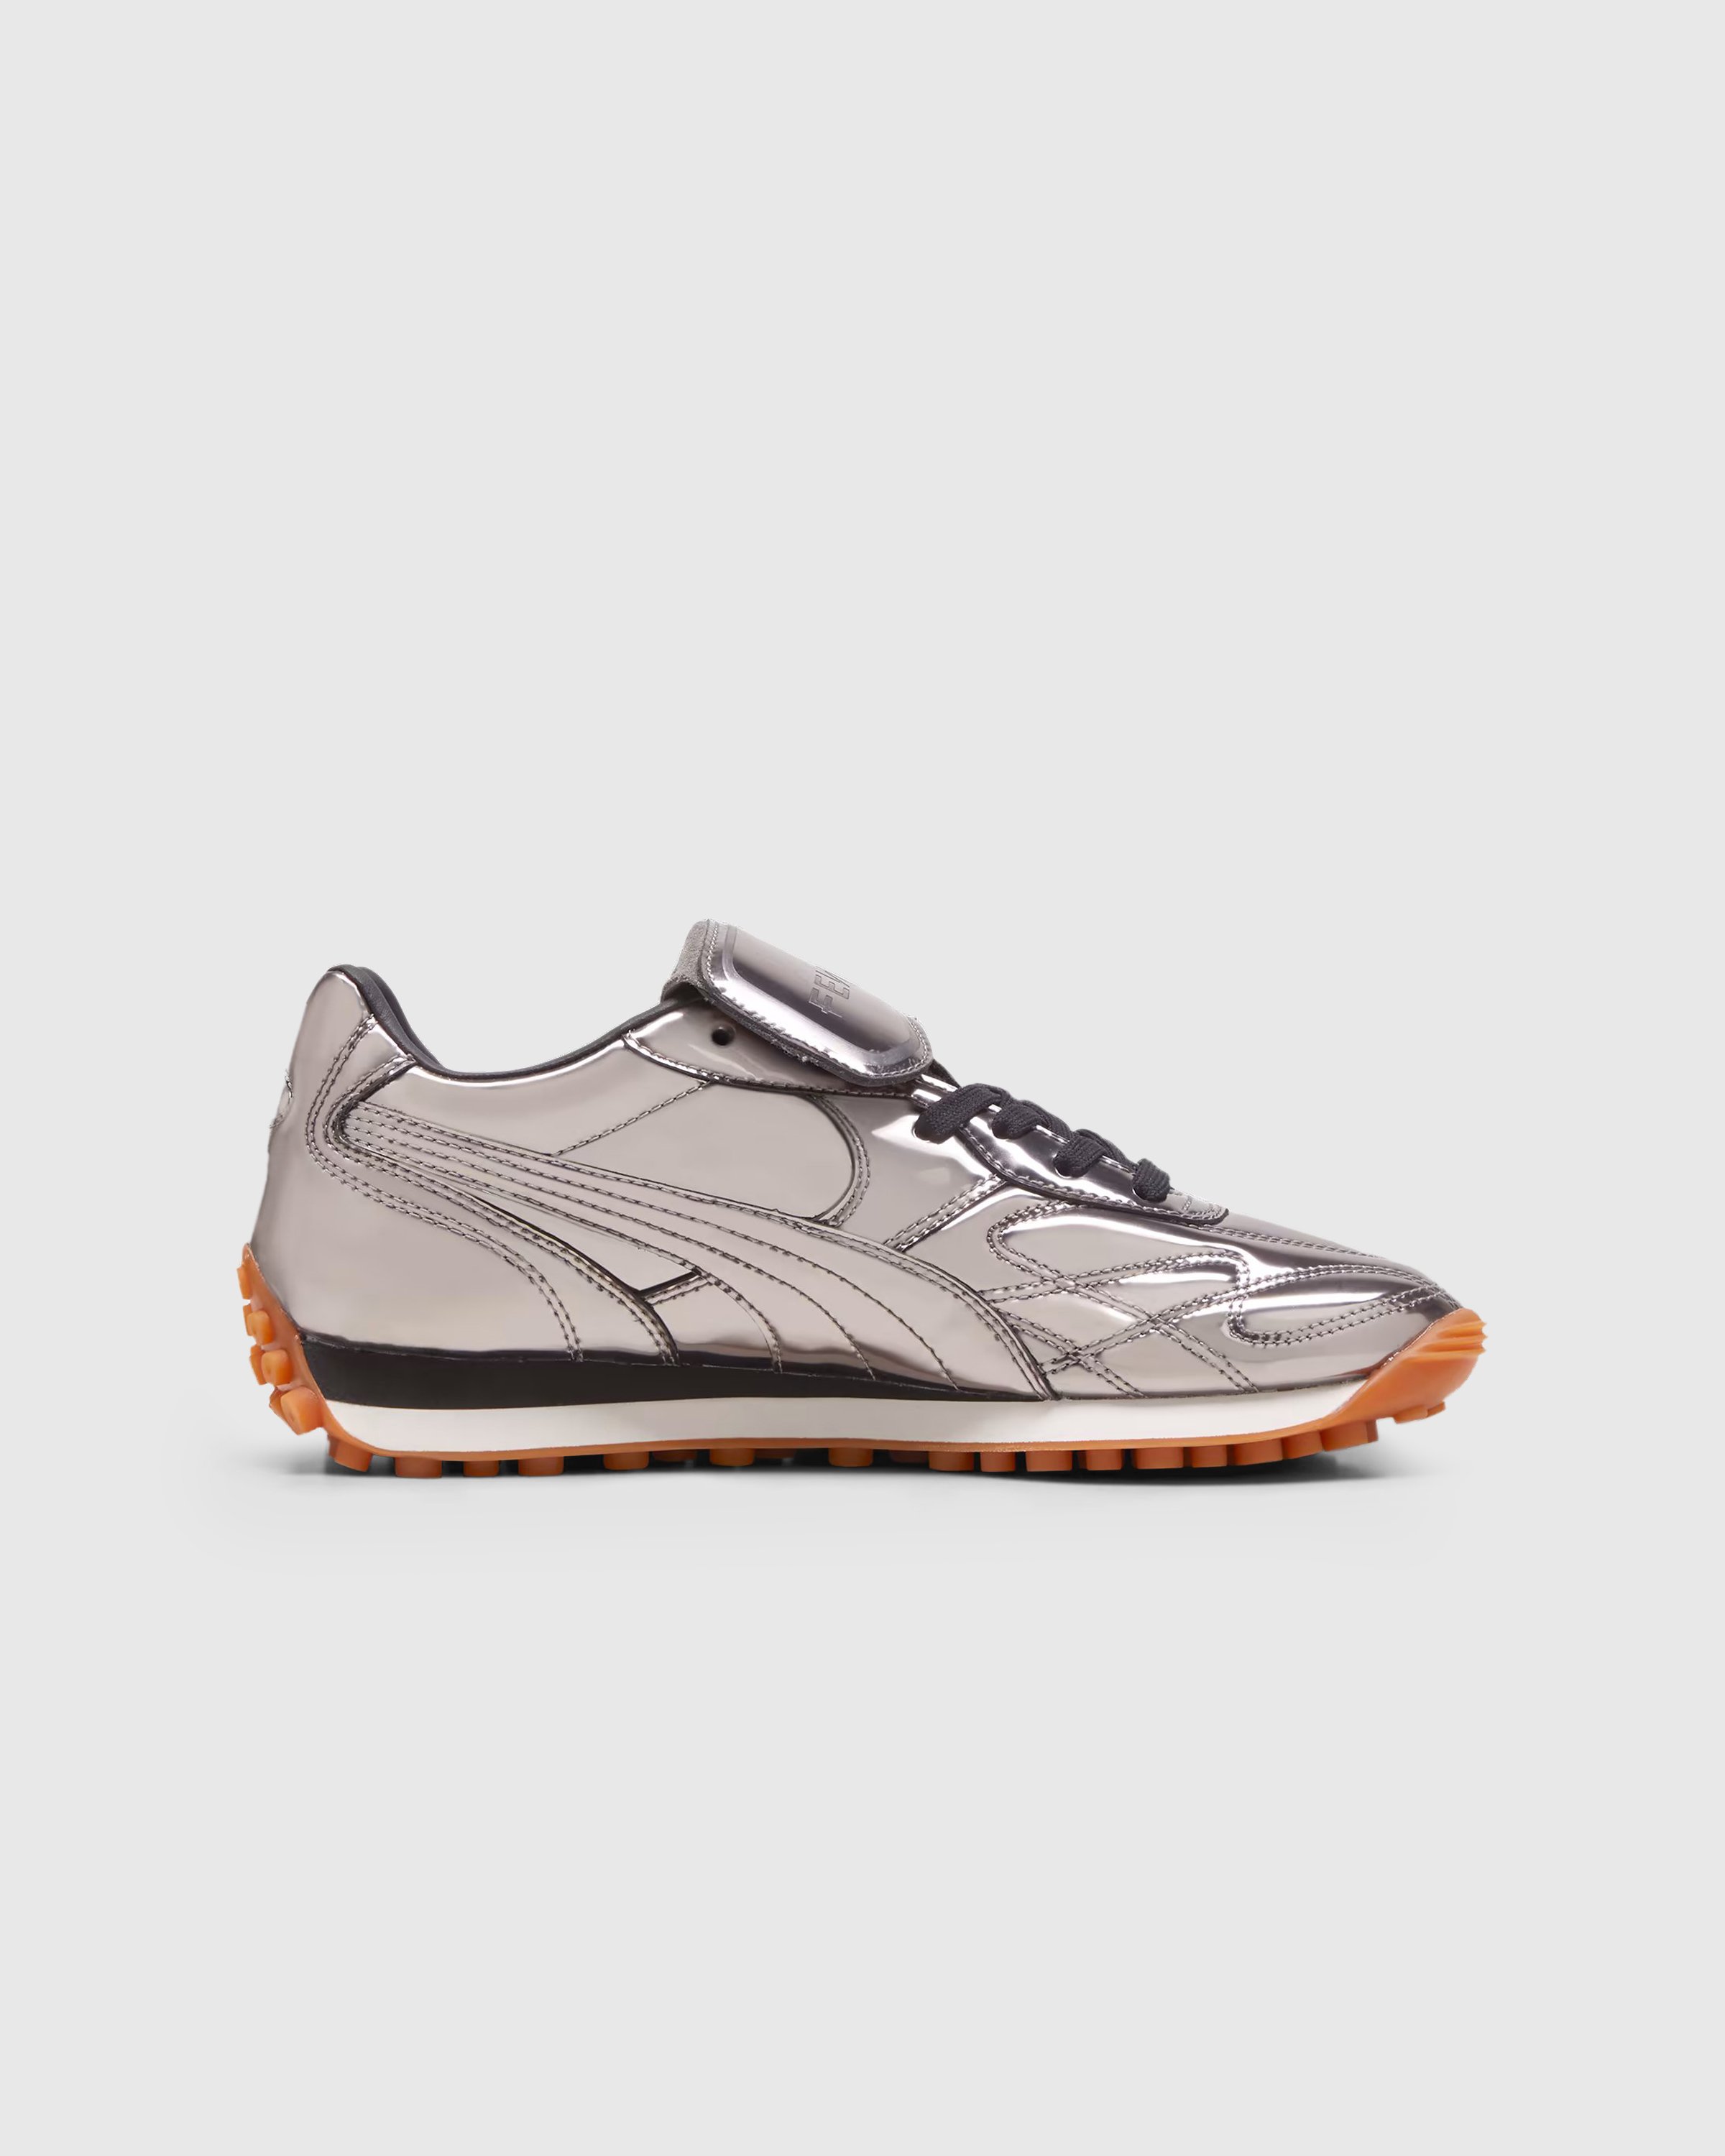 Fenty x Puma - Avanti C Aged Silver - Footwear - Silver - Image 1